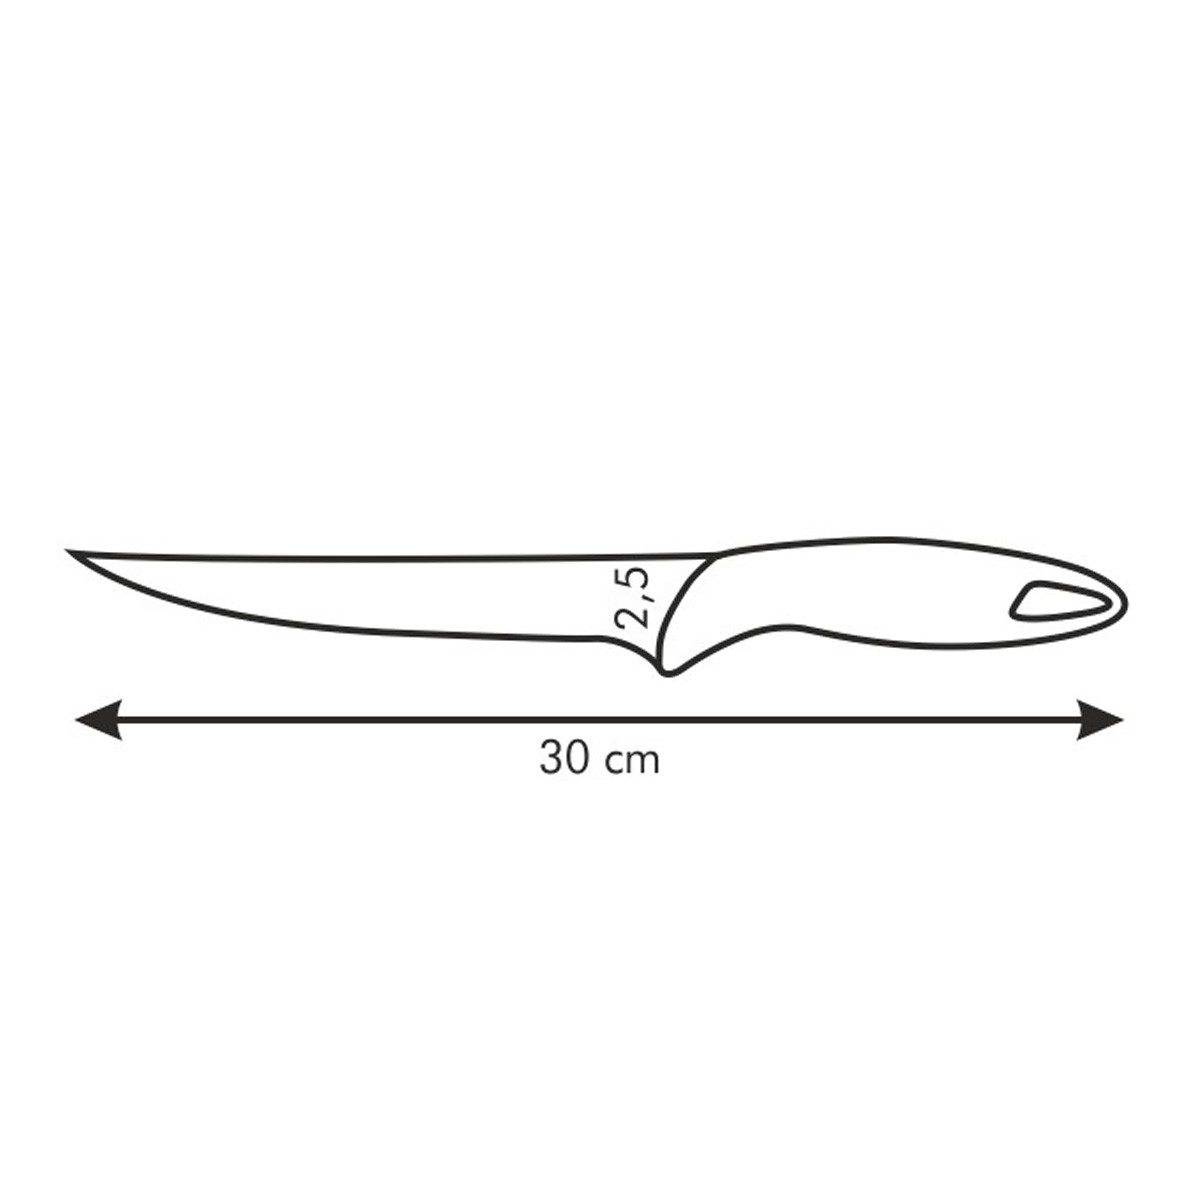 Nůž filetovací PRESTO 18 cm